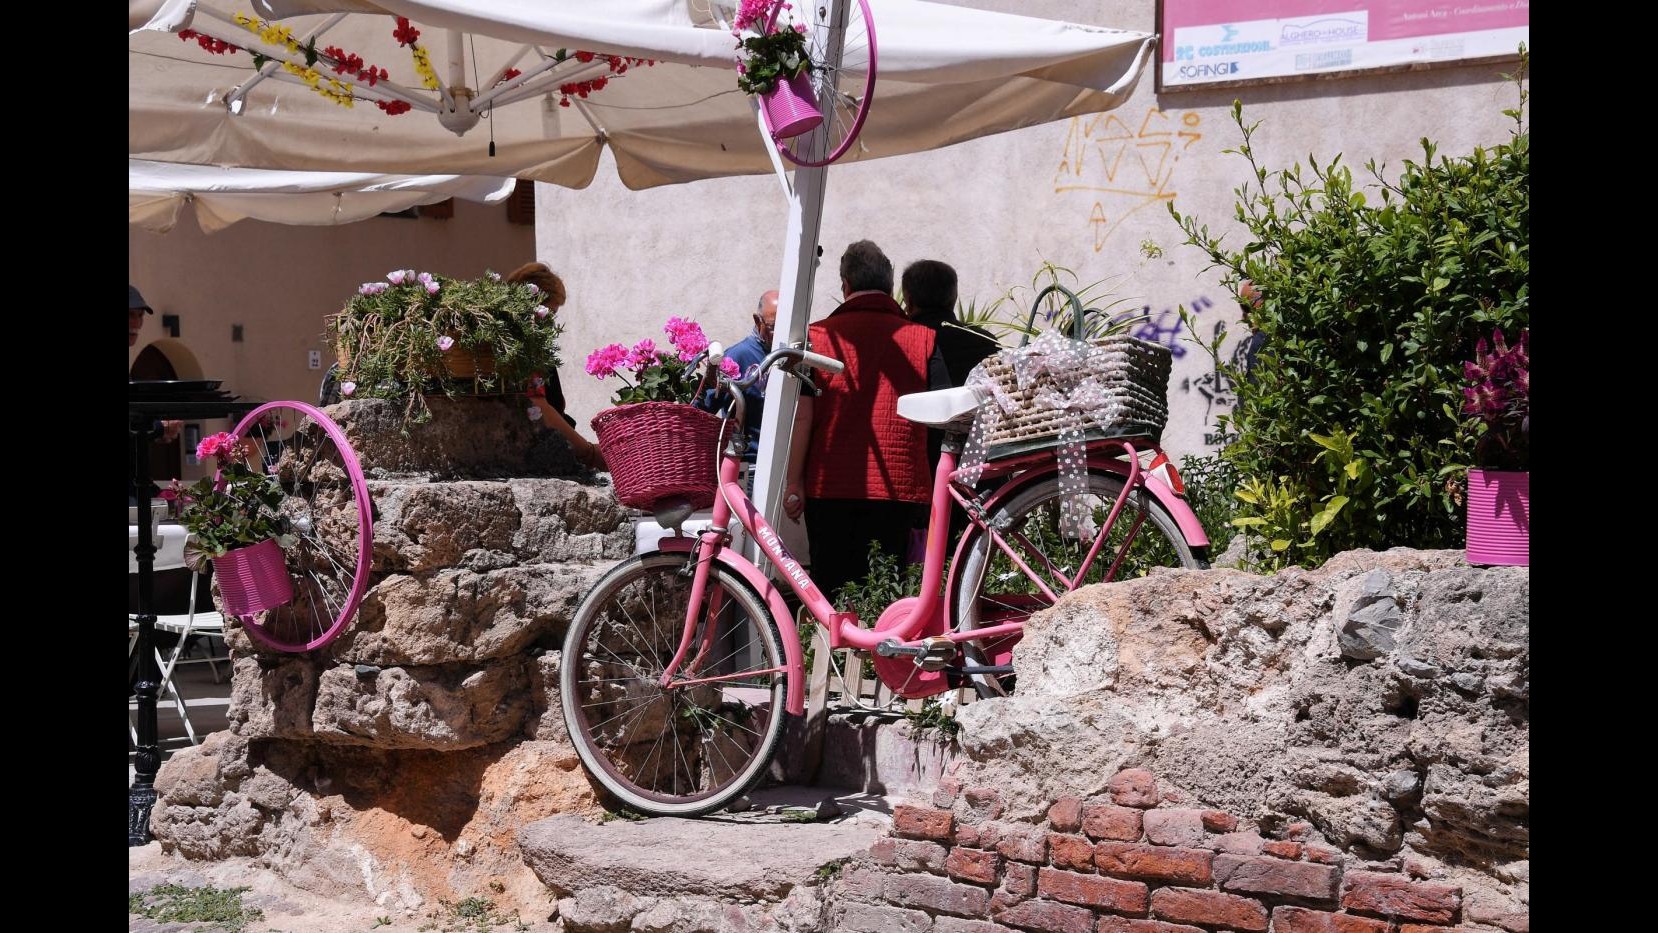 FOTO Giro d’Italia, Alghero si tinge di rosa per la prima tappa